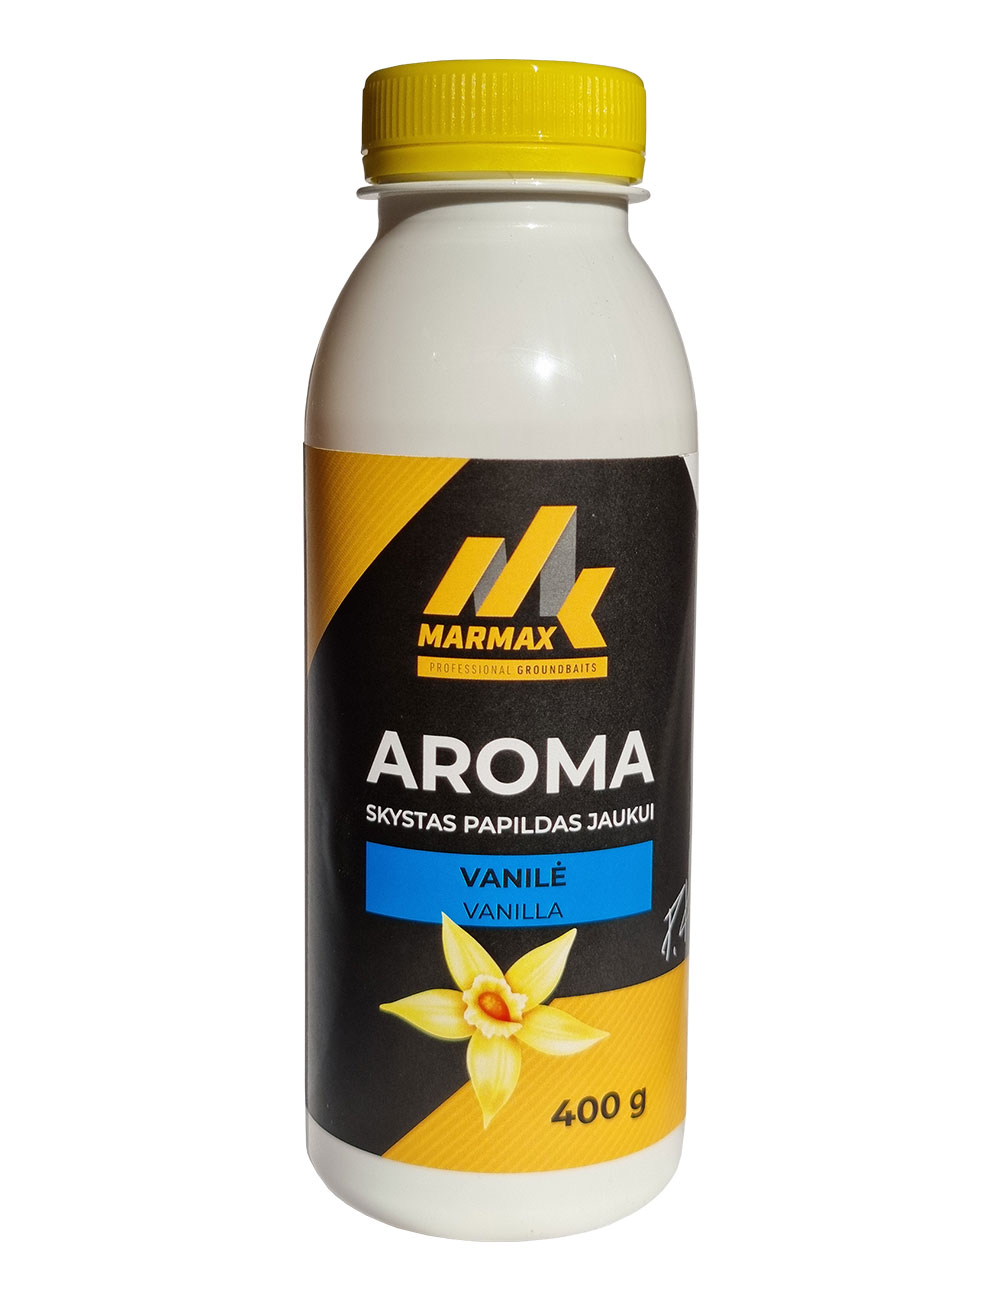 Aroma - Vanilė (400g)